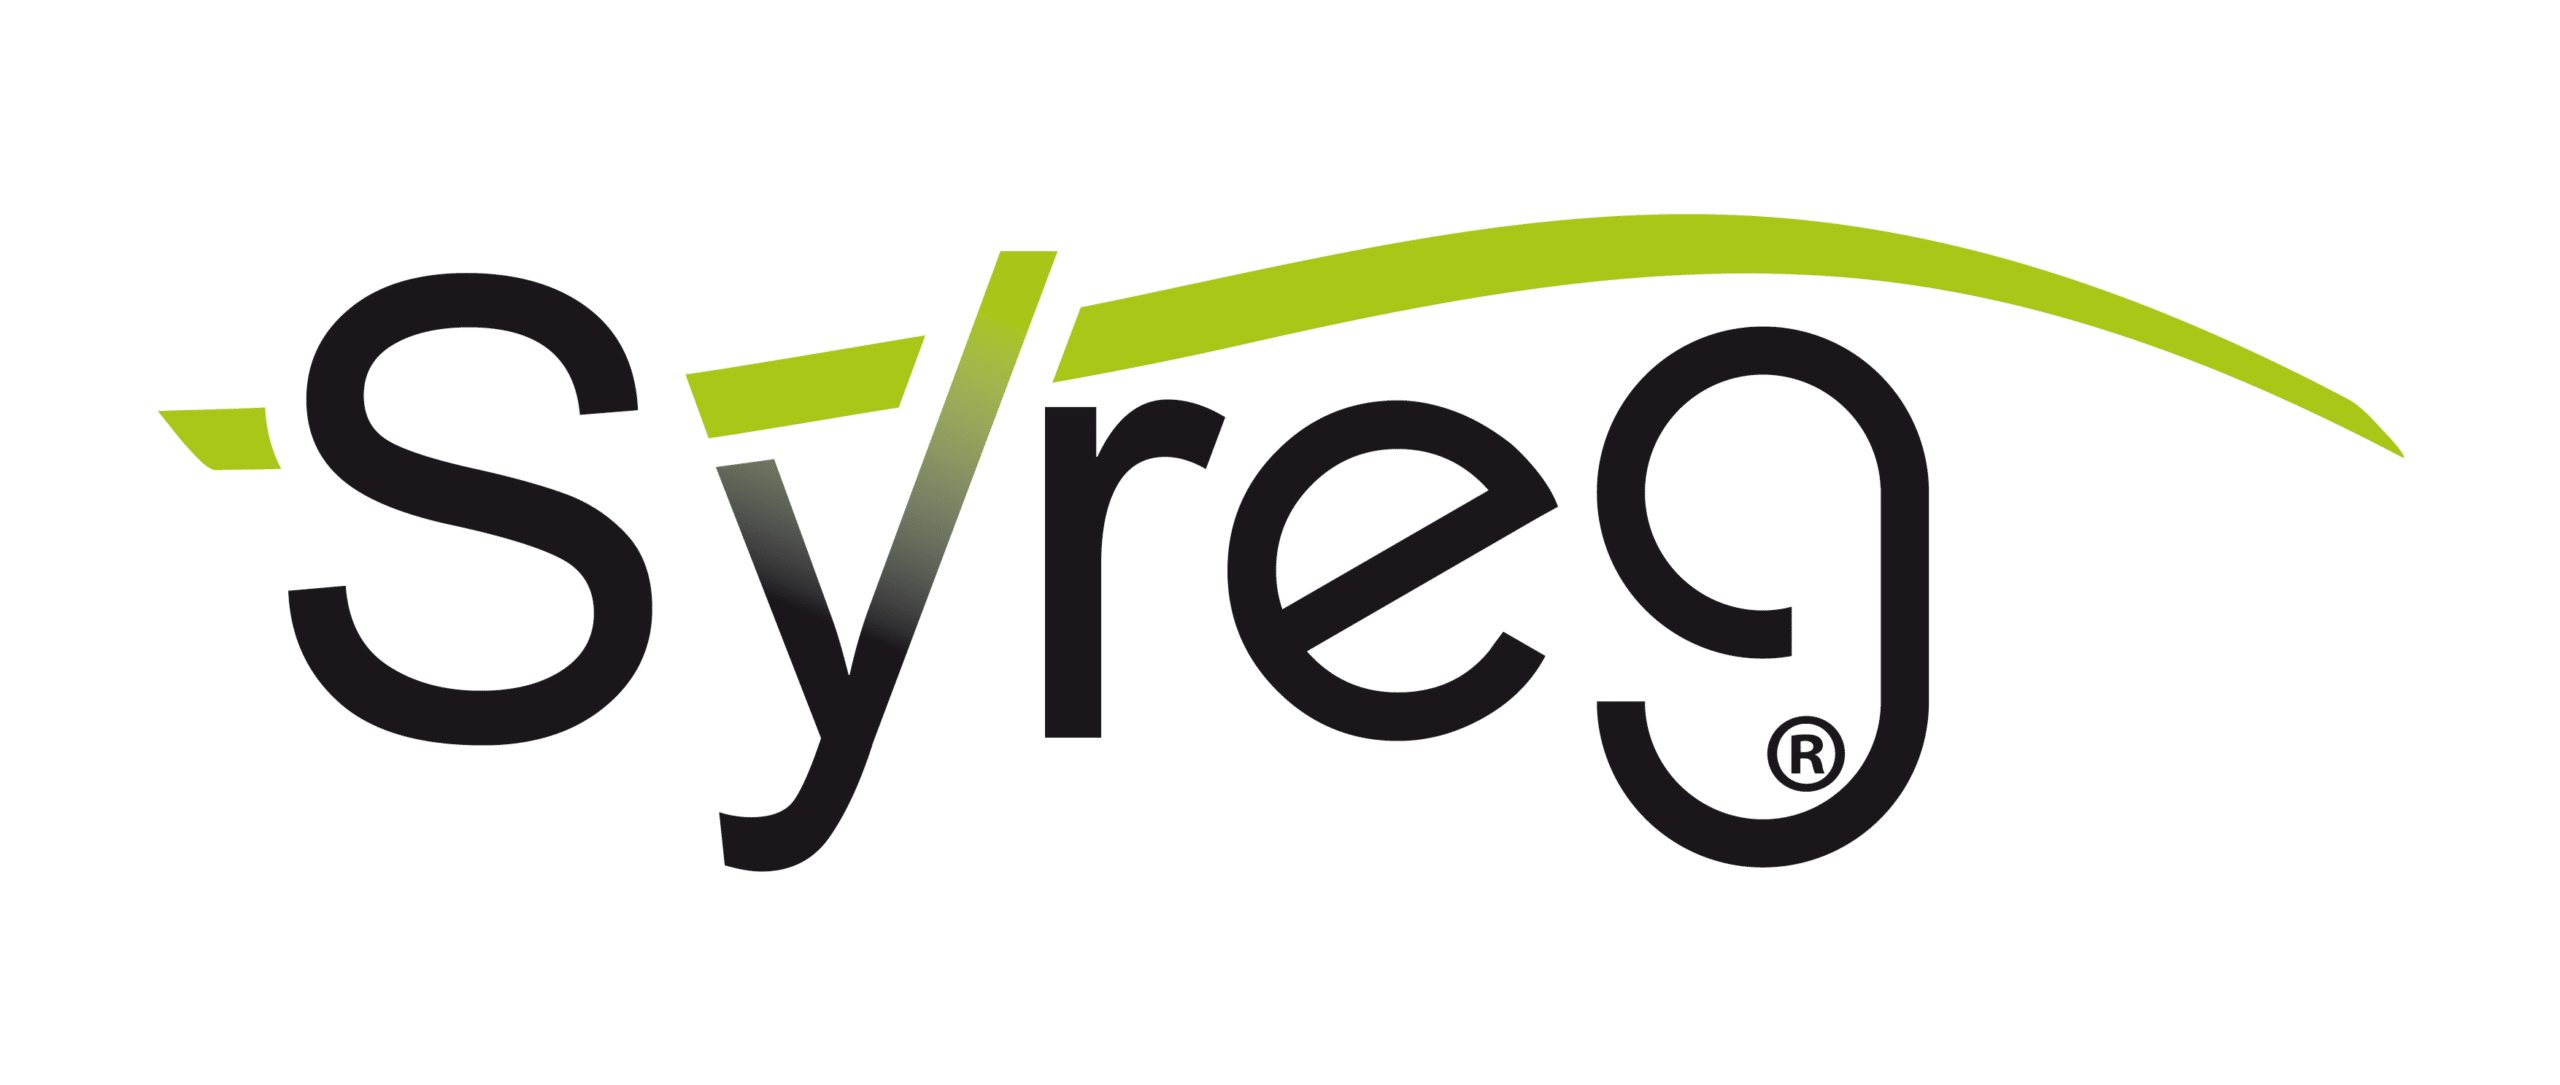 Syreg, l’entreprise liégeoise économe